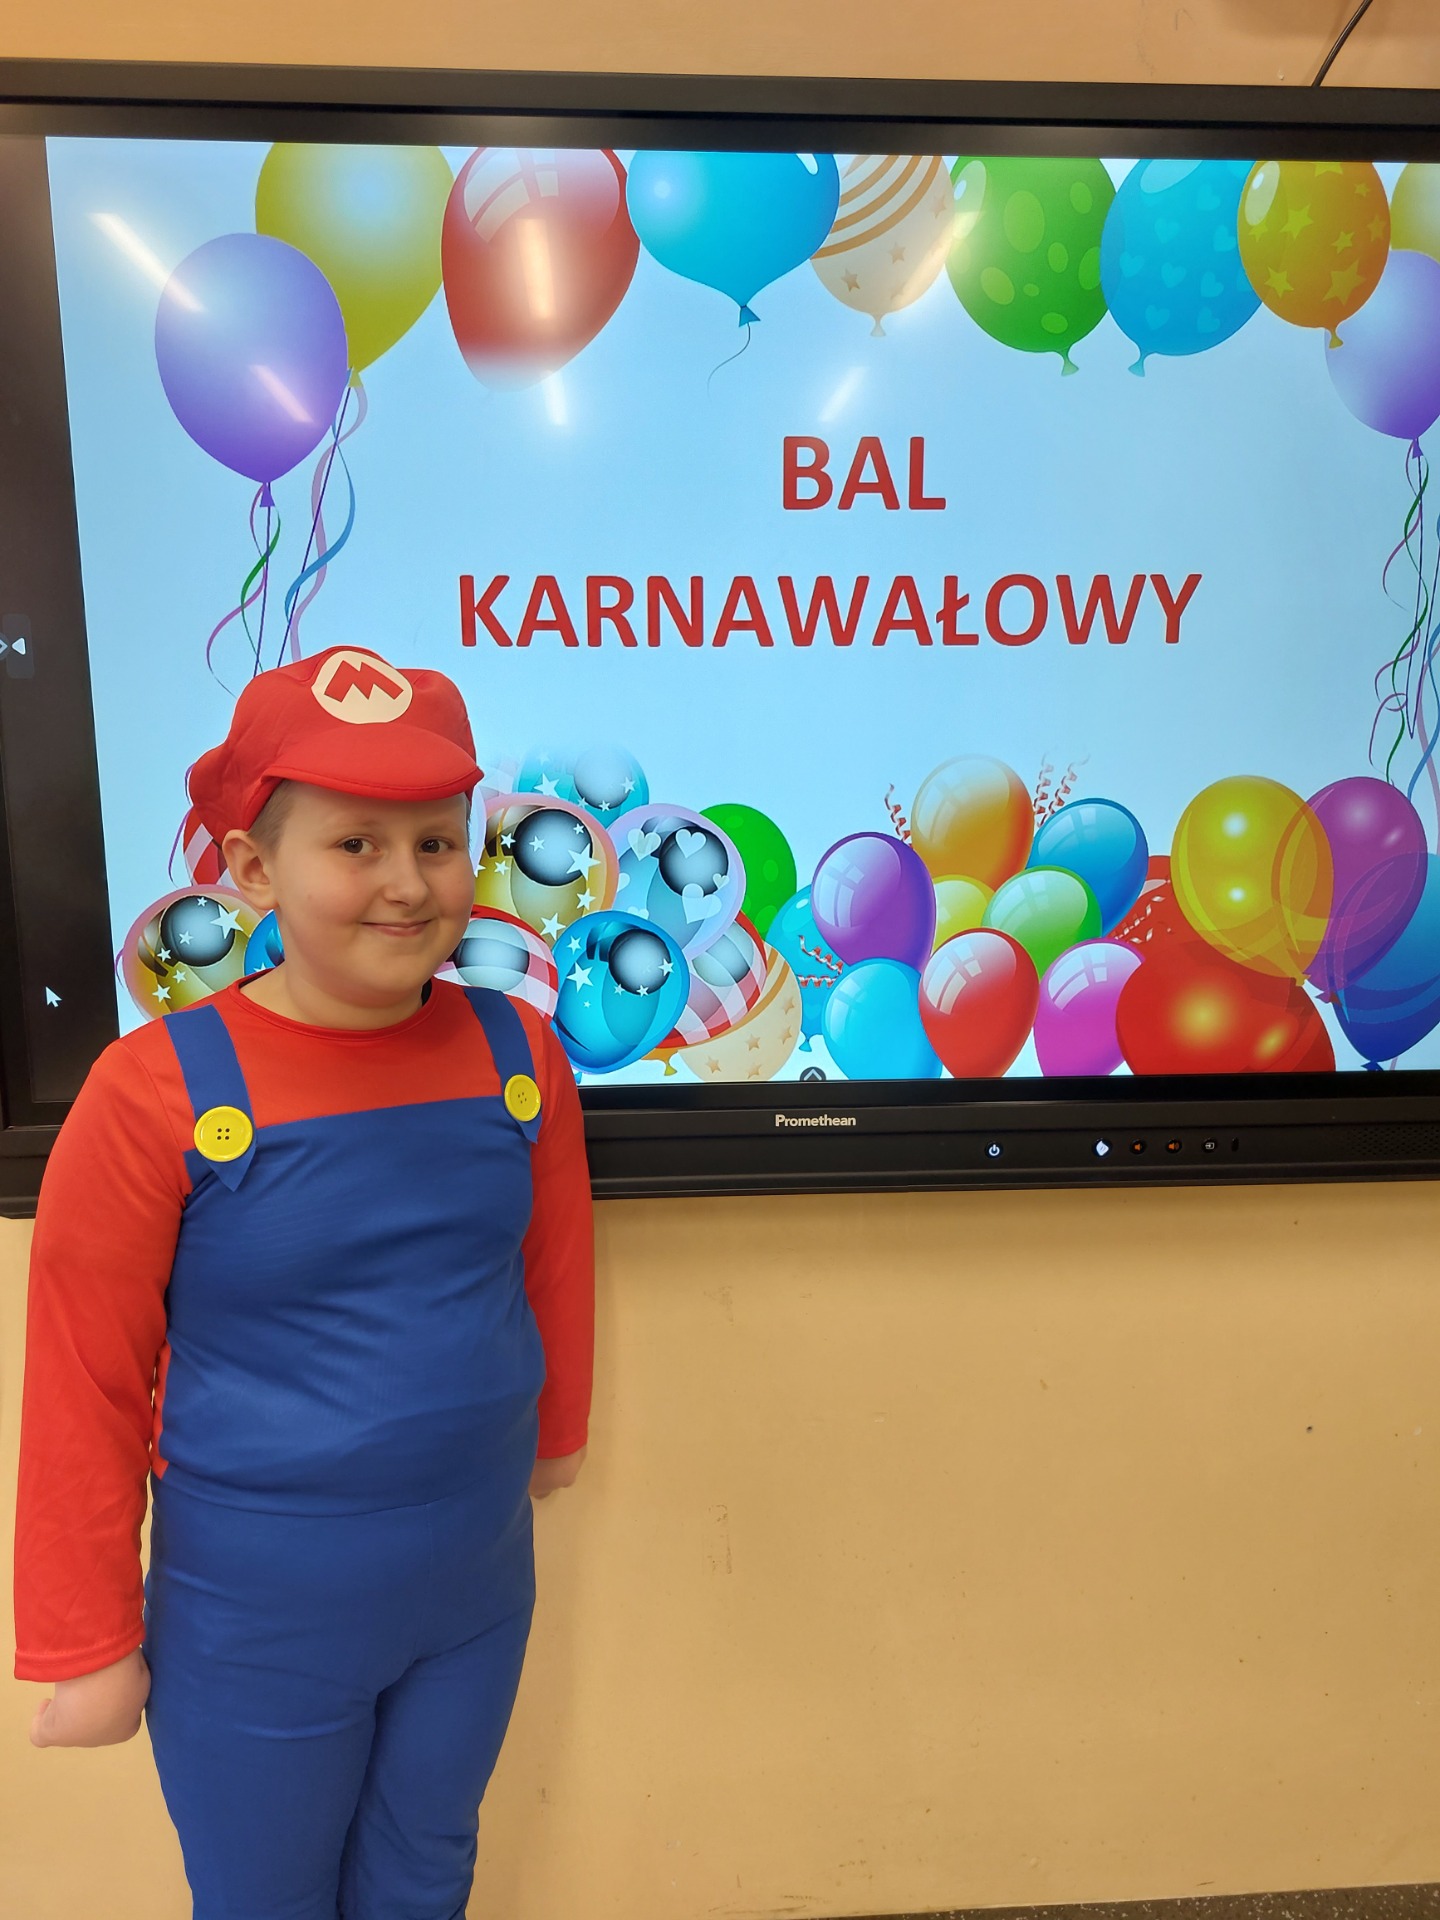 Uczeń przebrany za postać Mario pozuje do zdjęcia, z tyłu napis: Bal karnawałowy.